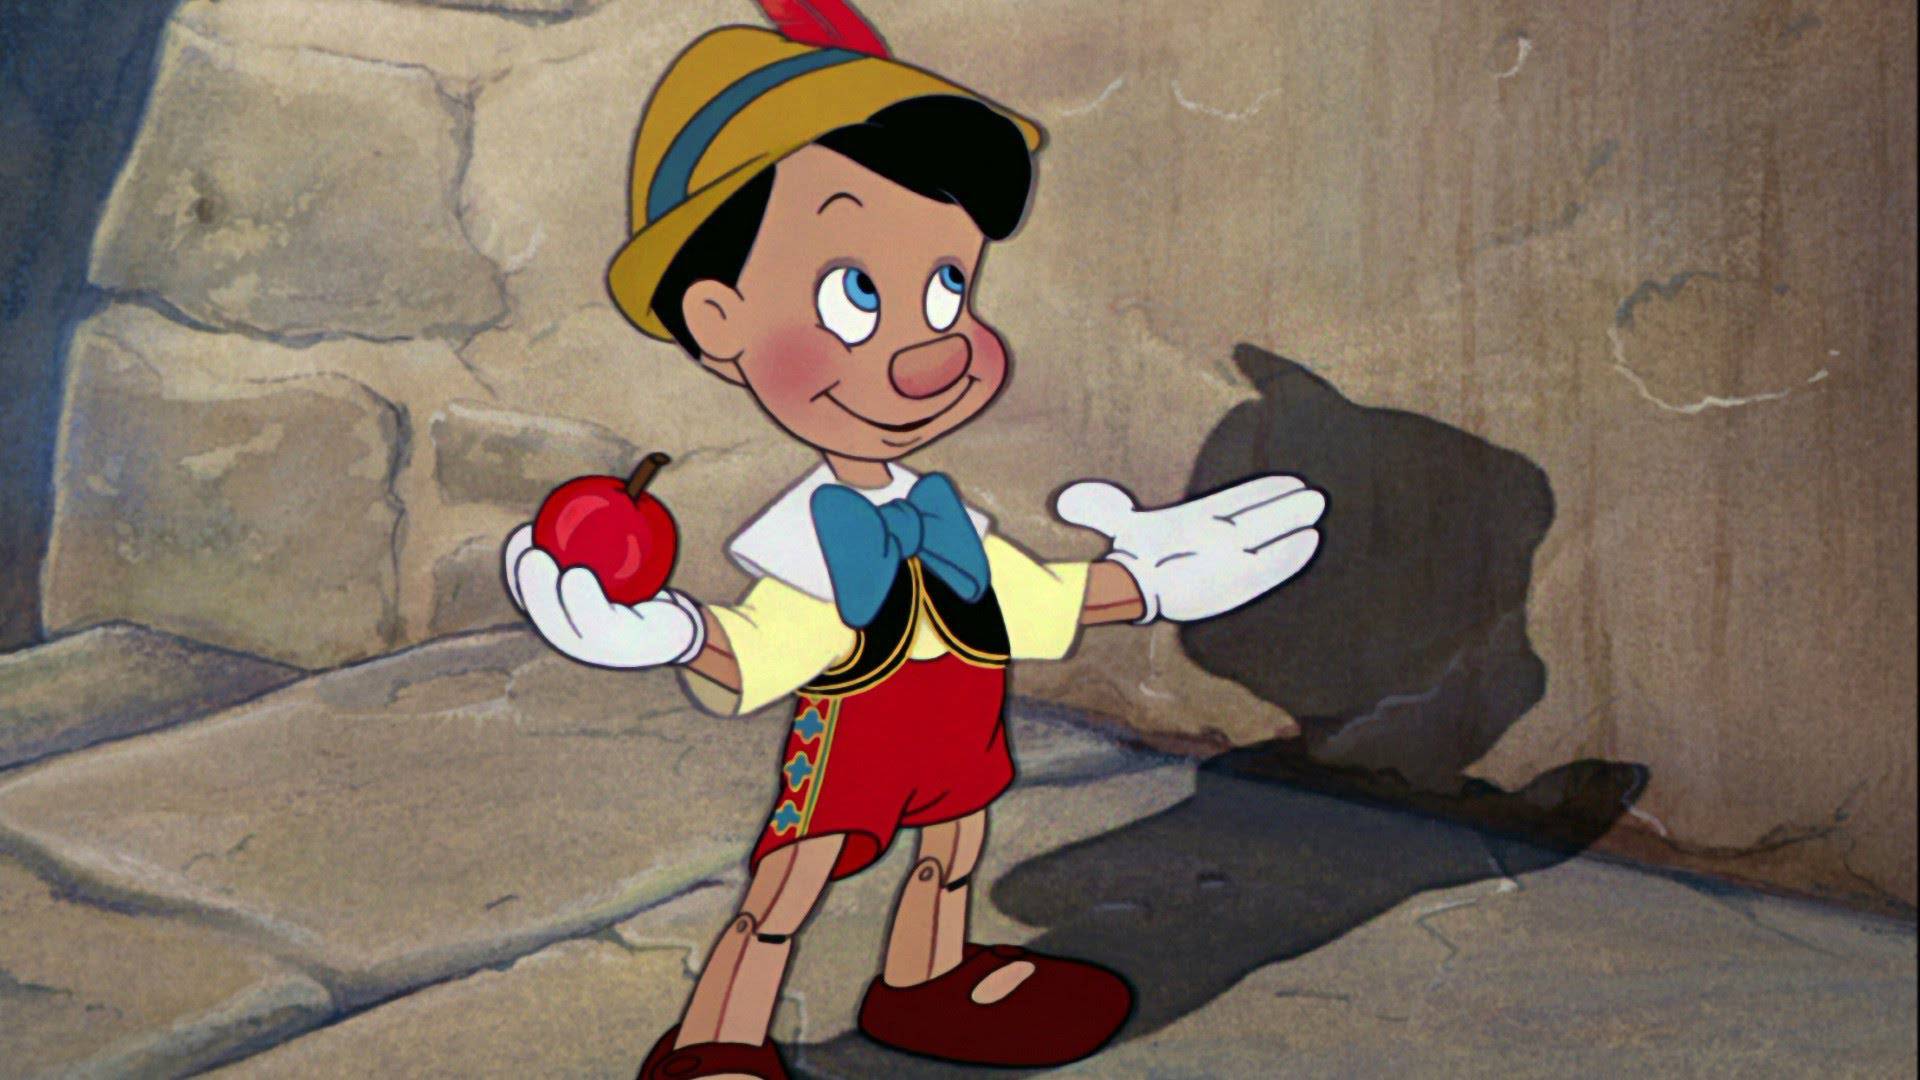 Tutto il romanzo di Pinocchio è stato tradotto in emoji